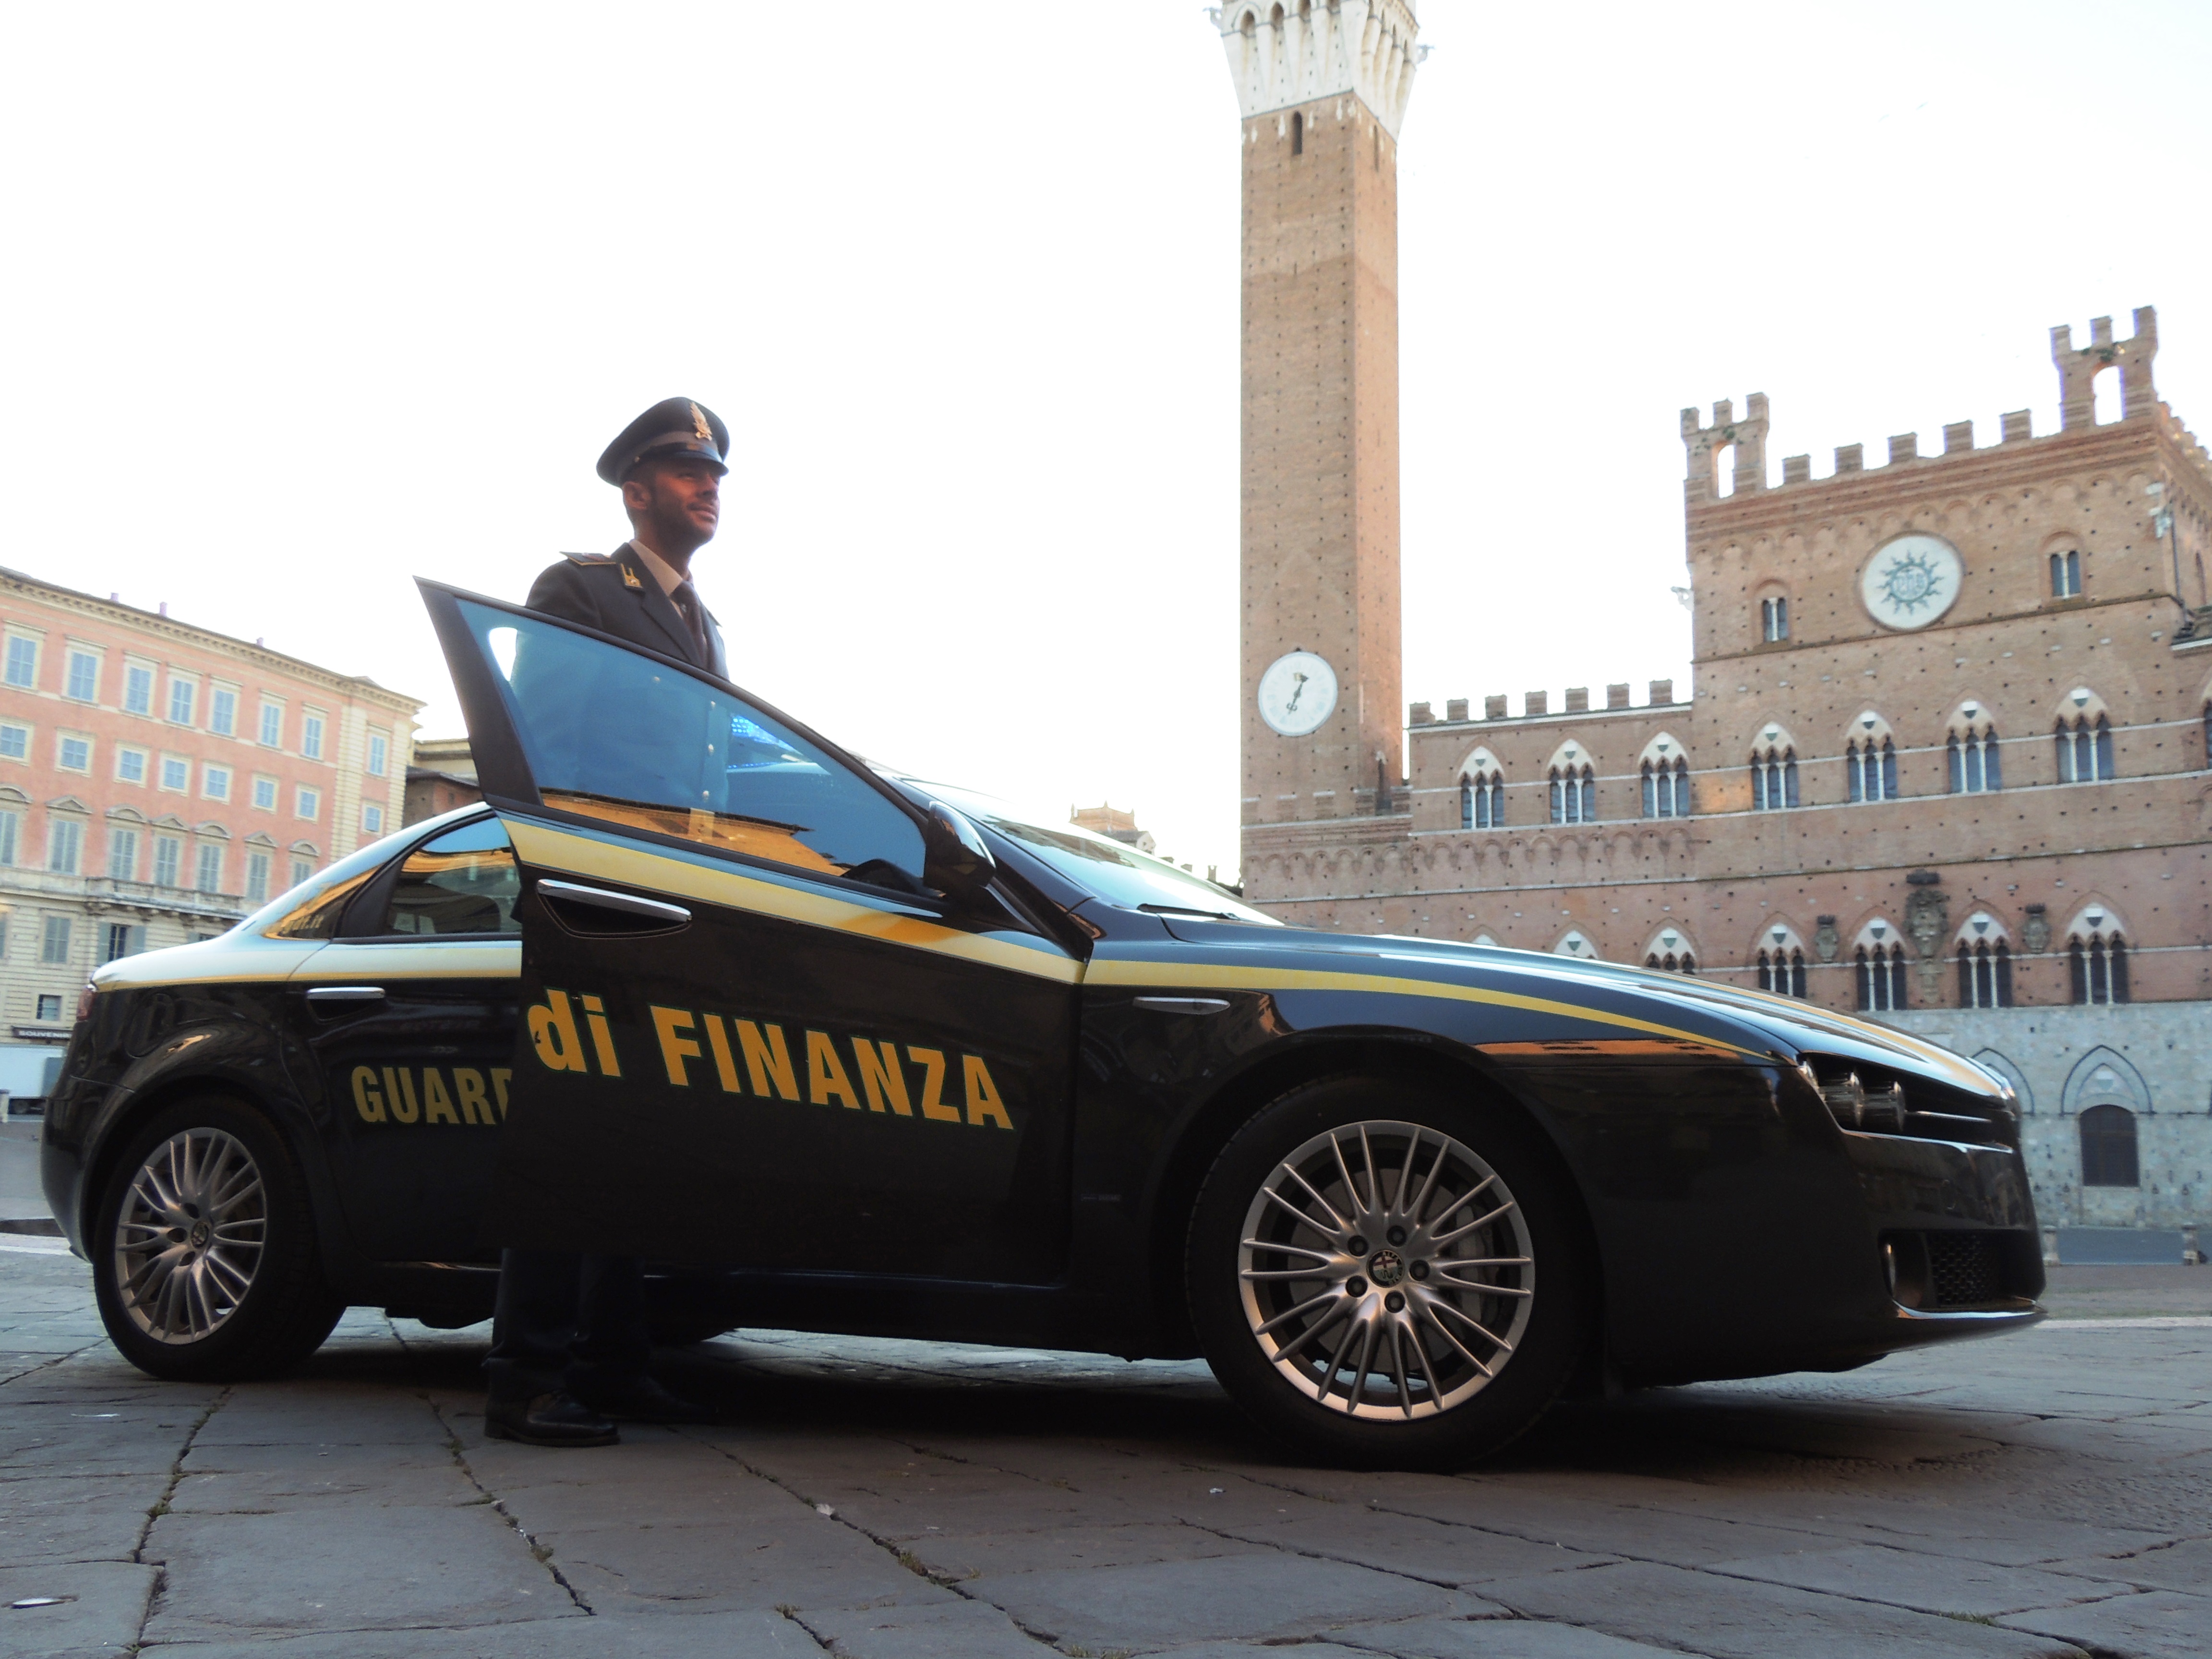 La Guardia di Finanza di Siena ha festeggiato il 242° anniversario di fondazione